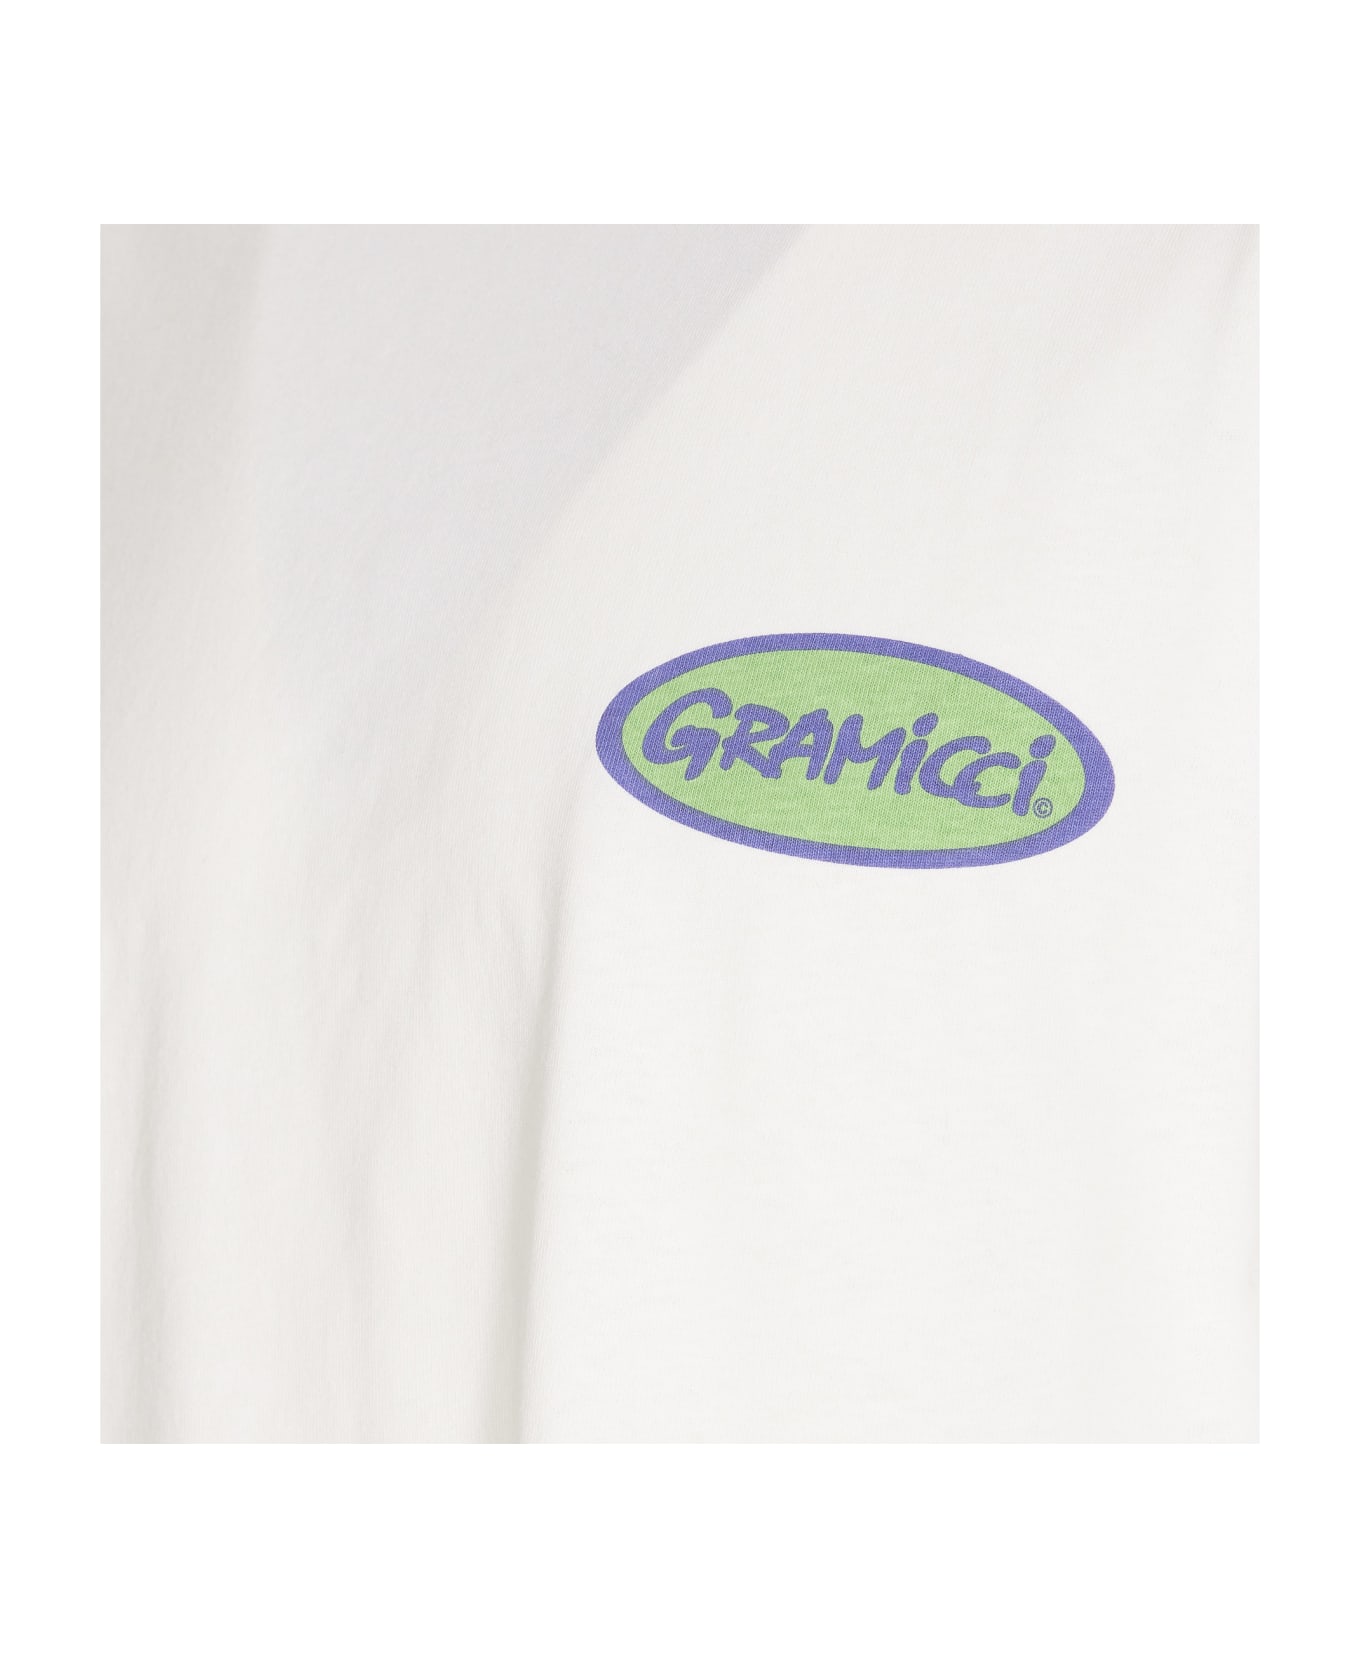 Gramicci Oval Logo T-shirt - White シャツ